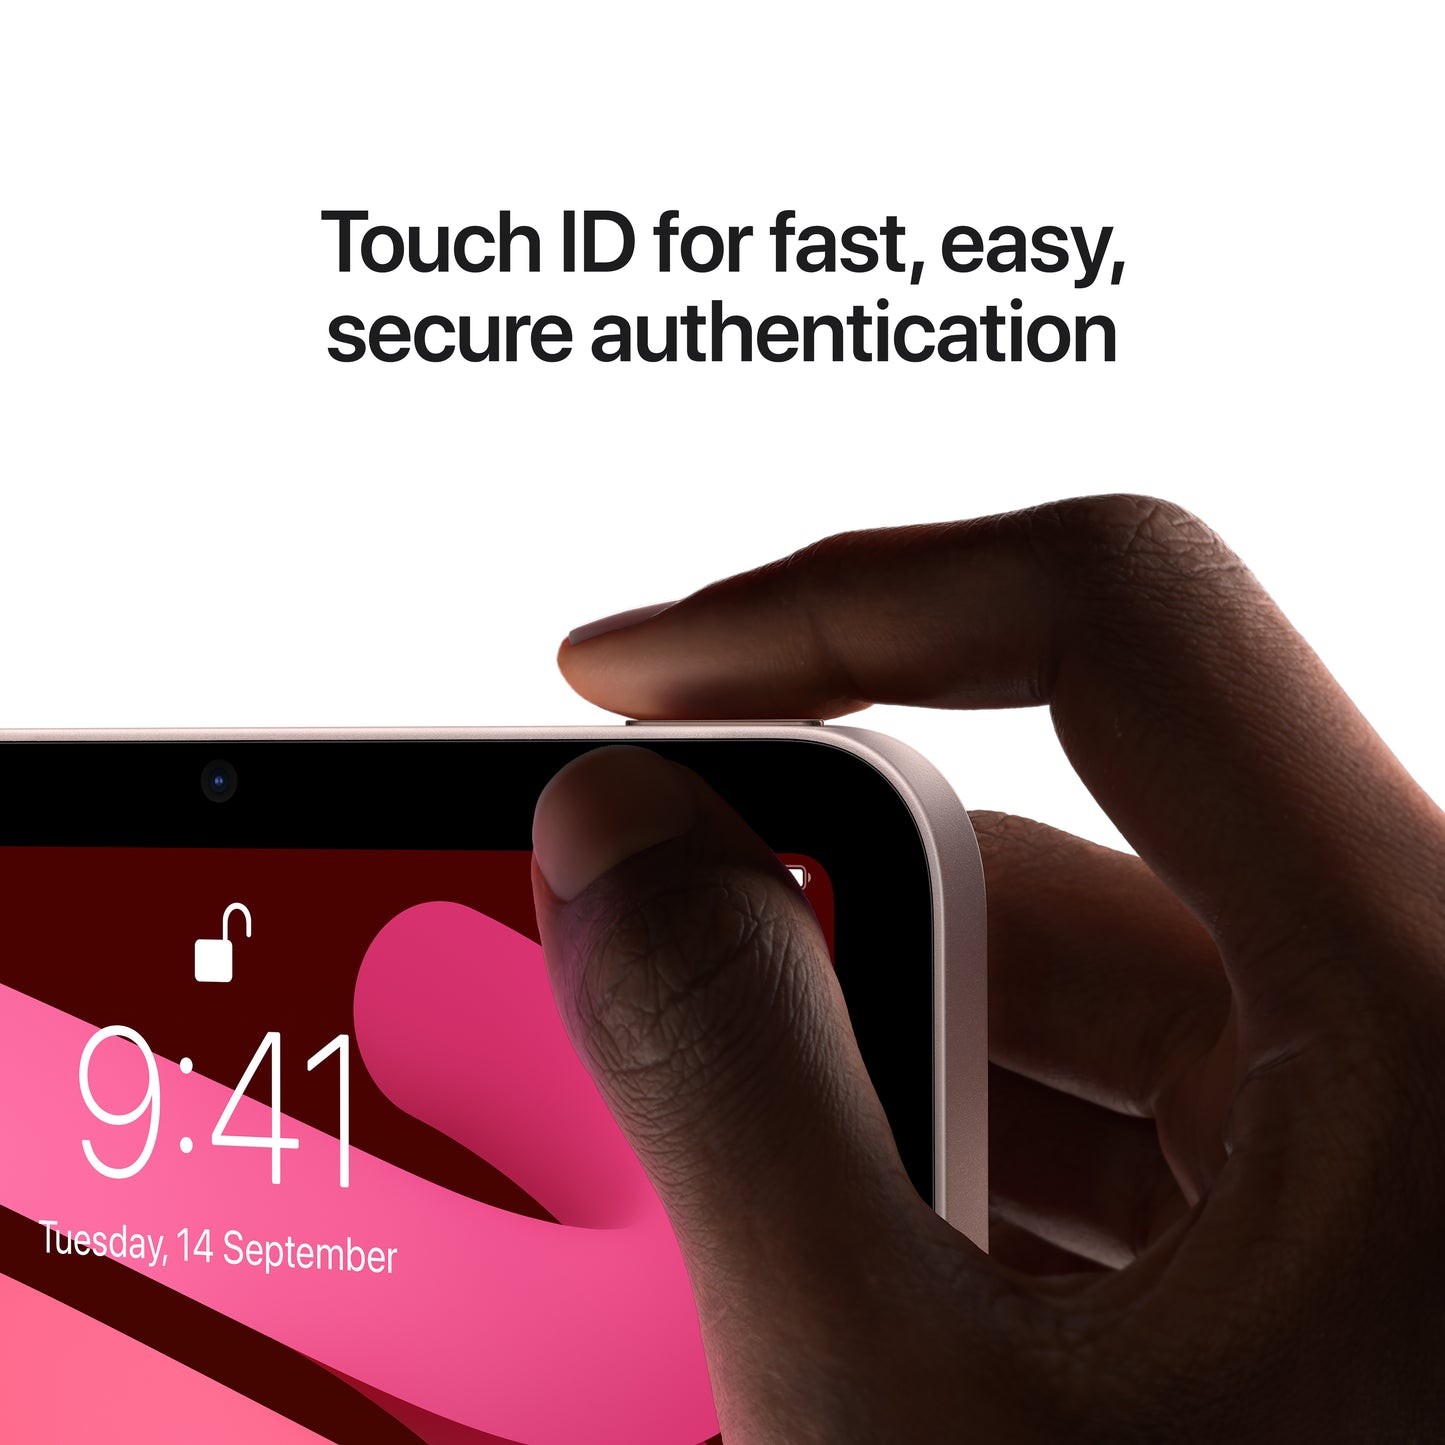 Apple iPad mini (6th Gen) Wi-Fi 64GB Pink